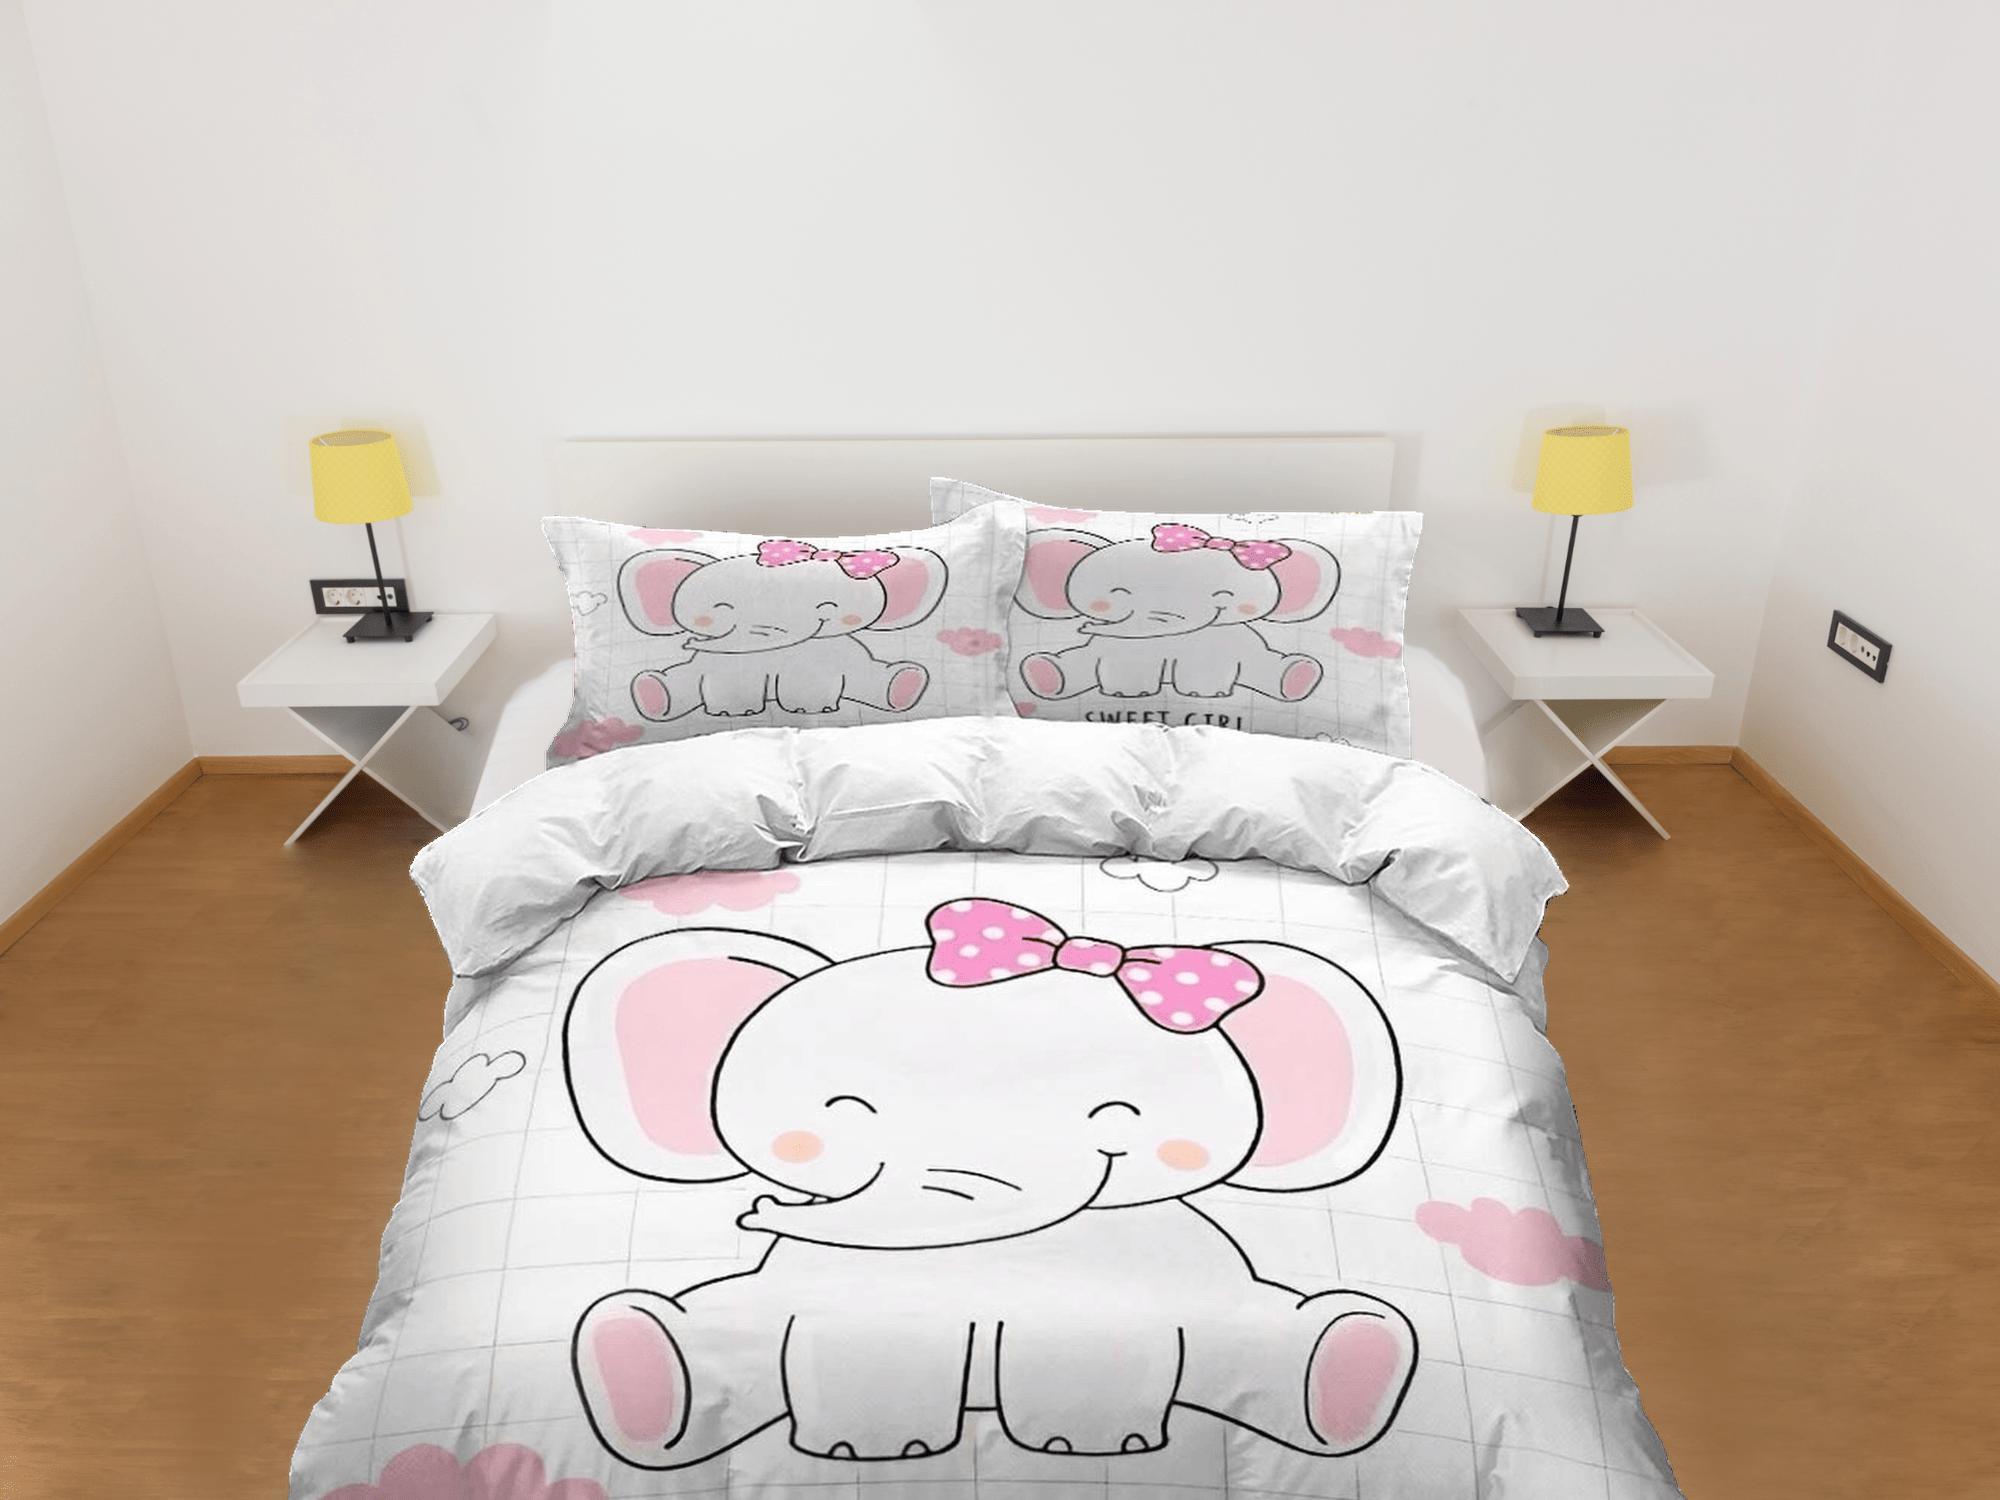 daintyduvet Sweet girl elephant bedding cute duvet cover set, kids bedding full, nursery bed decor, elephant baby shower, girl toddler bedding